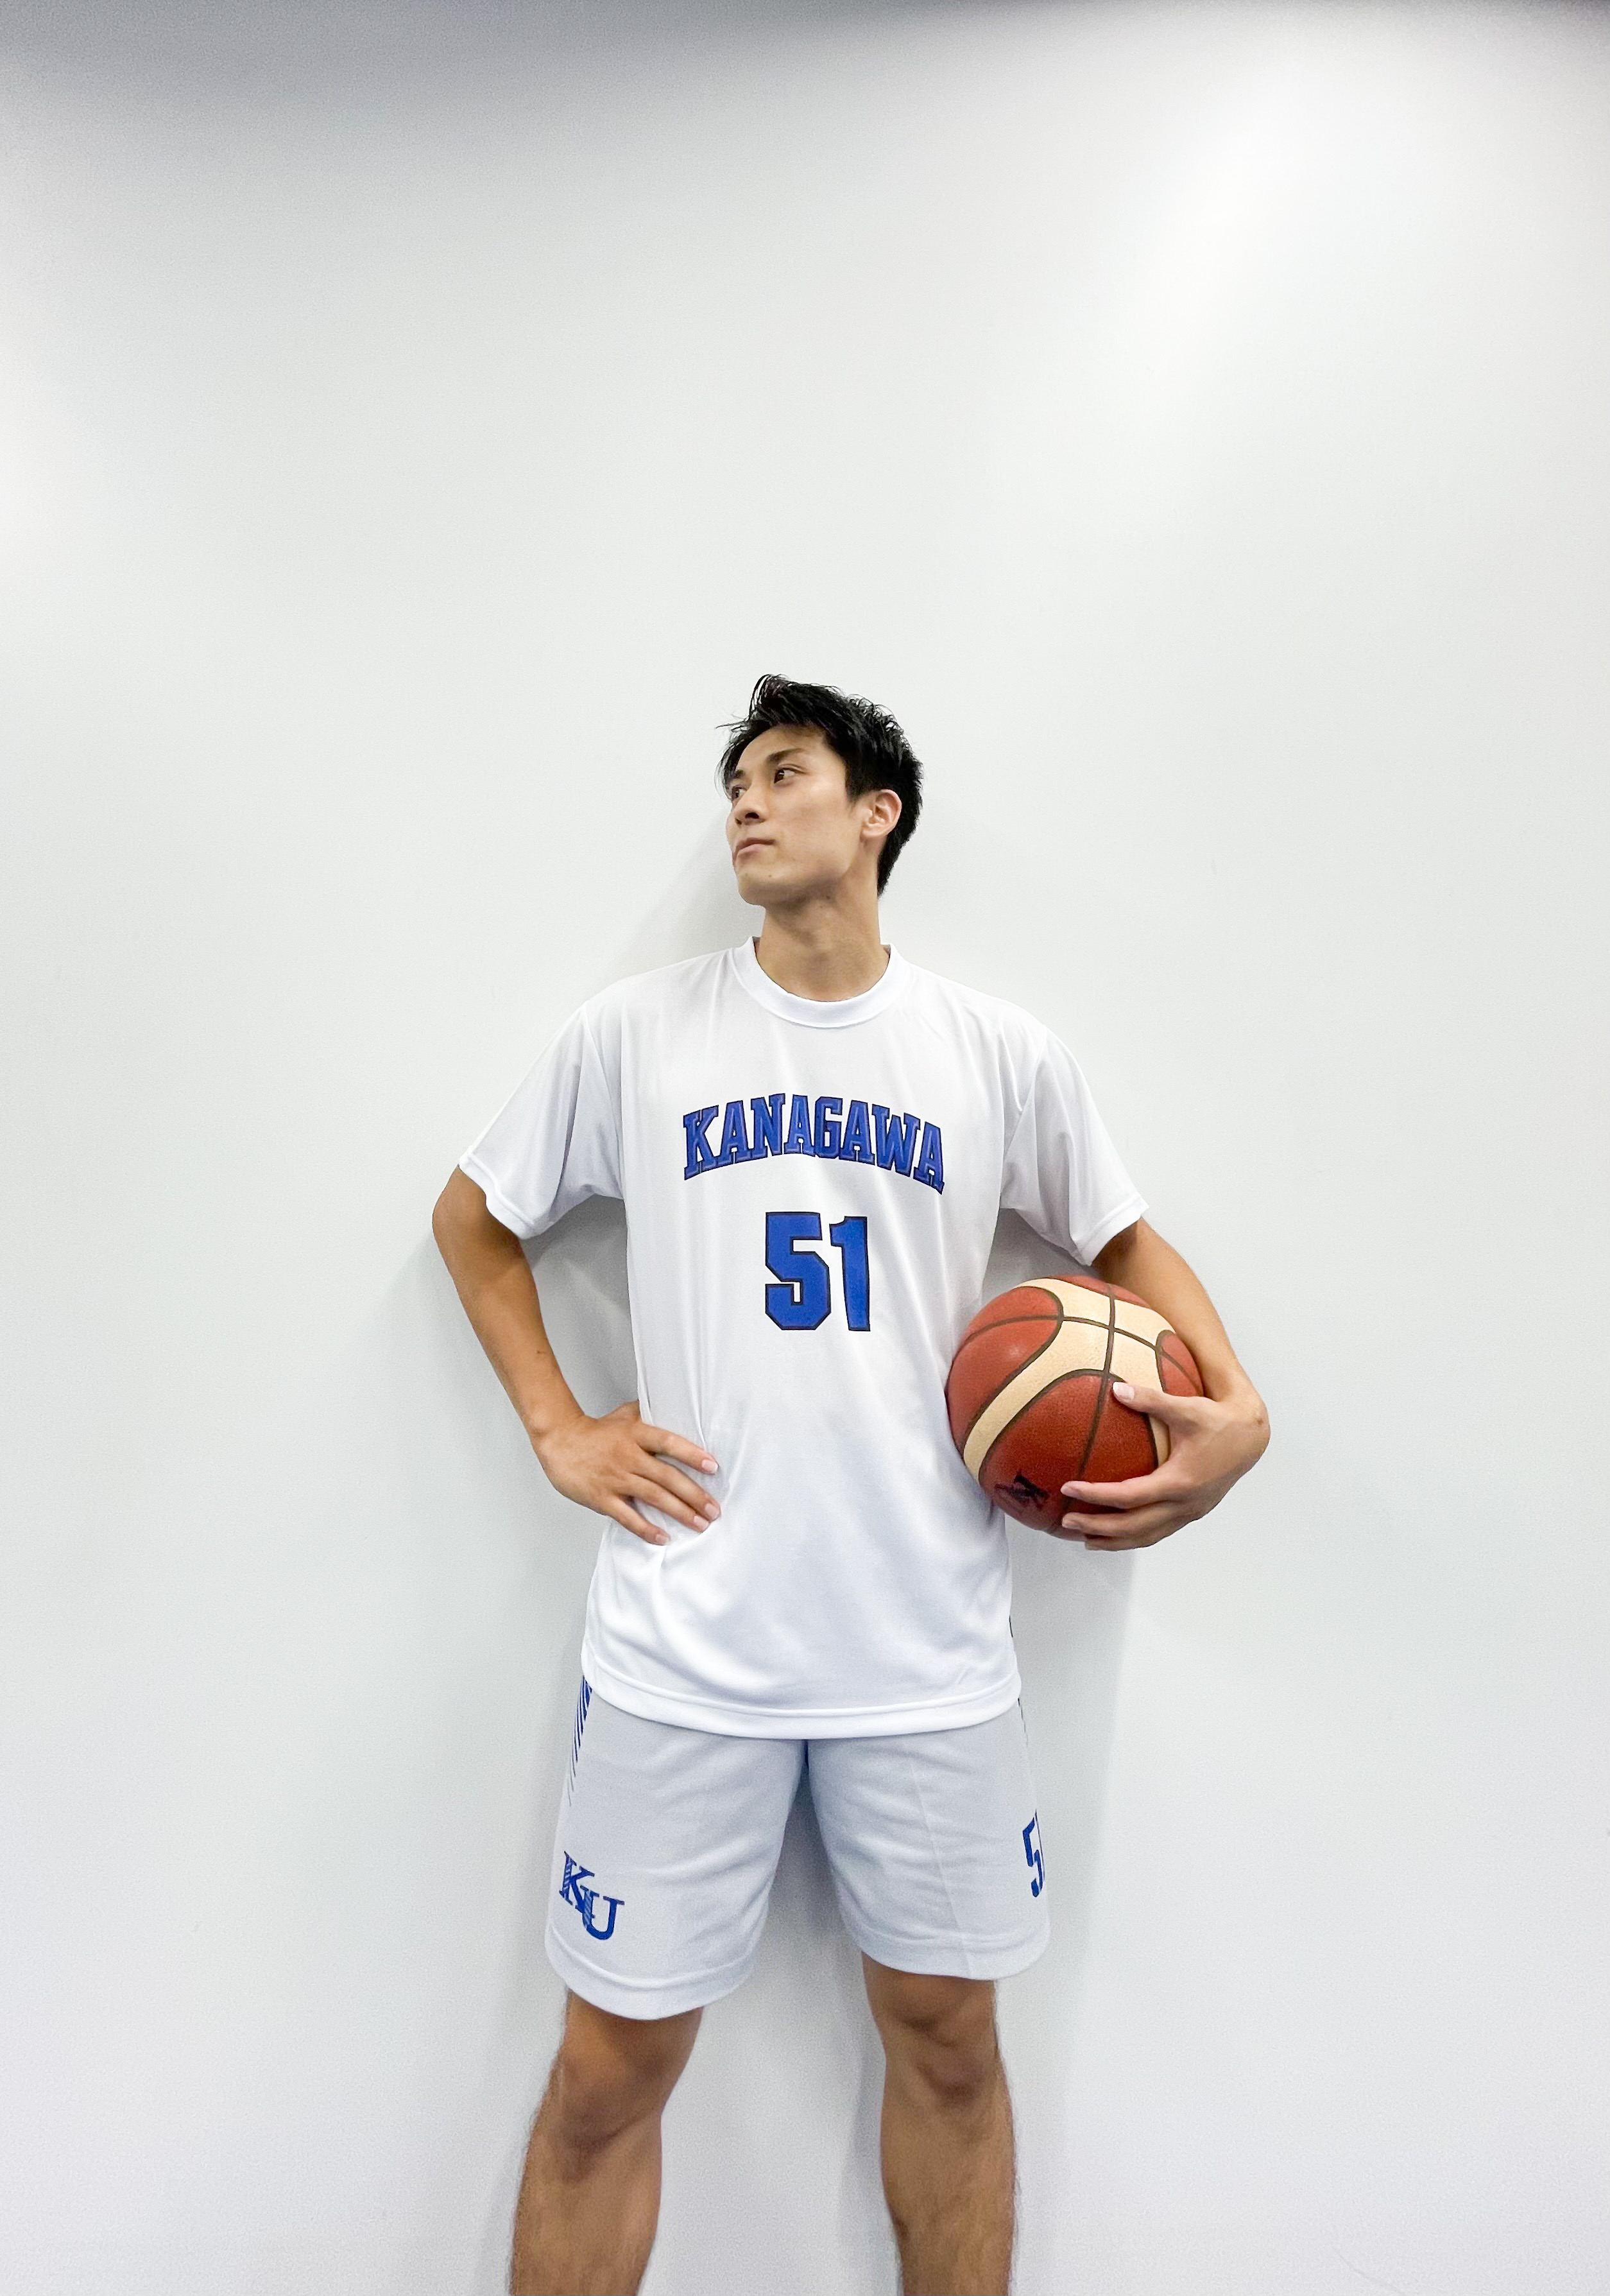 高校生にもつながる内容です神奈川大学バスケットボール部のオフェンス